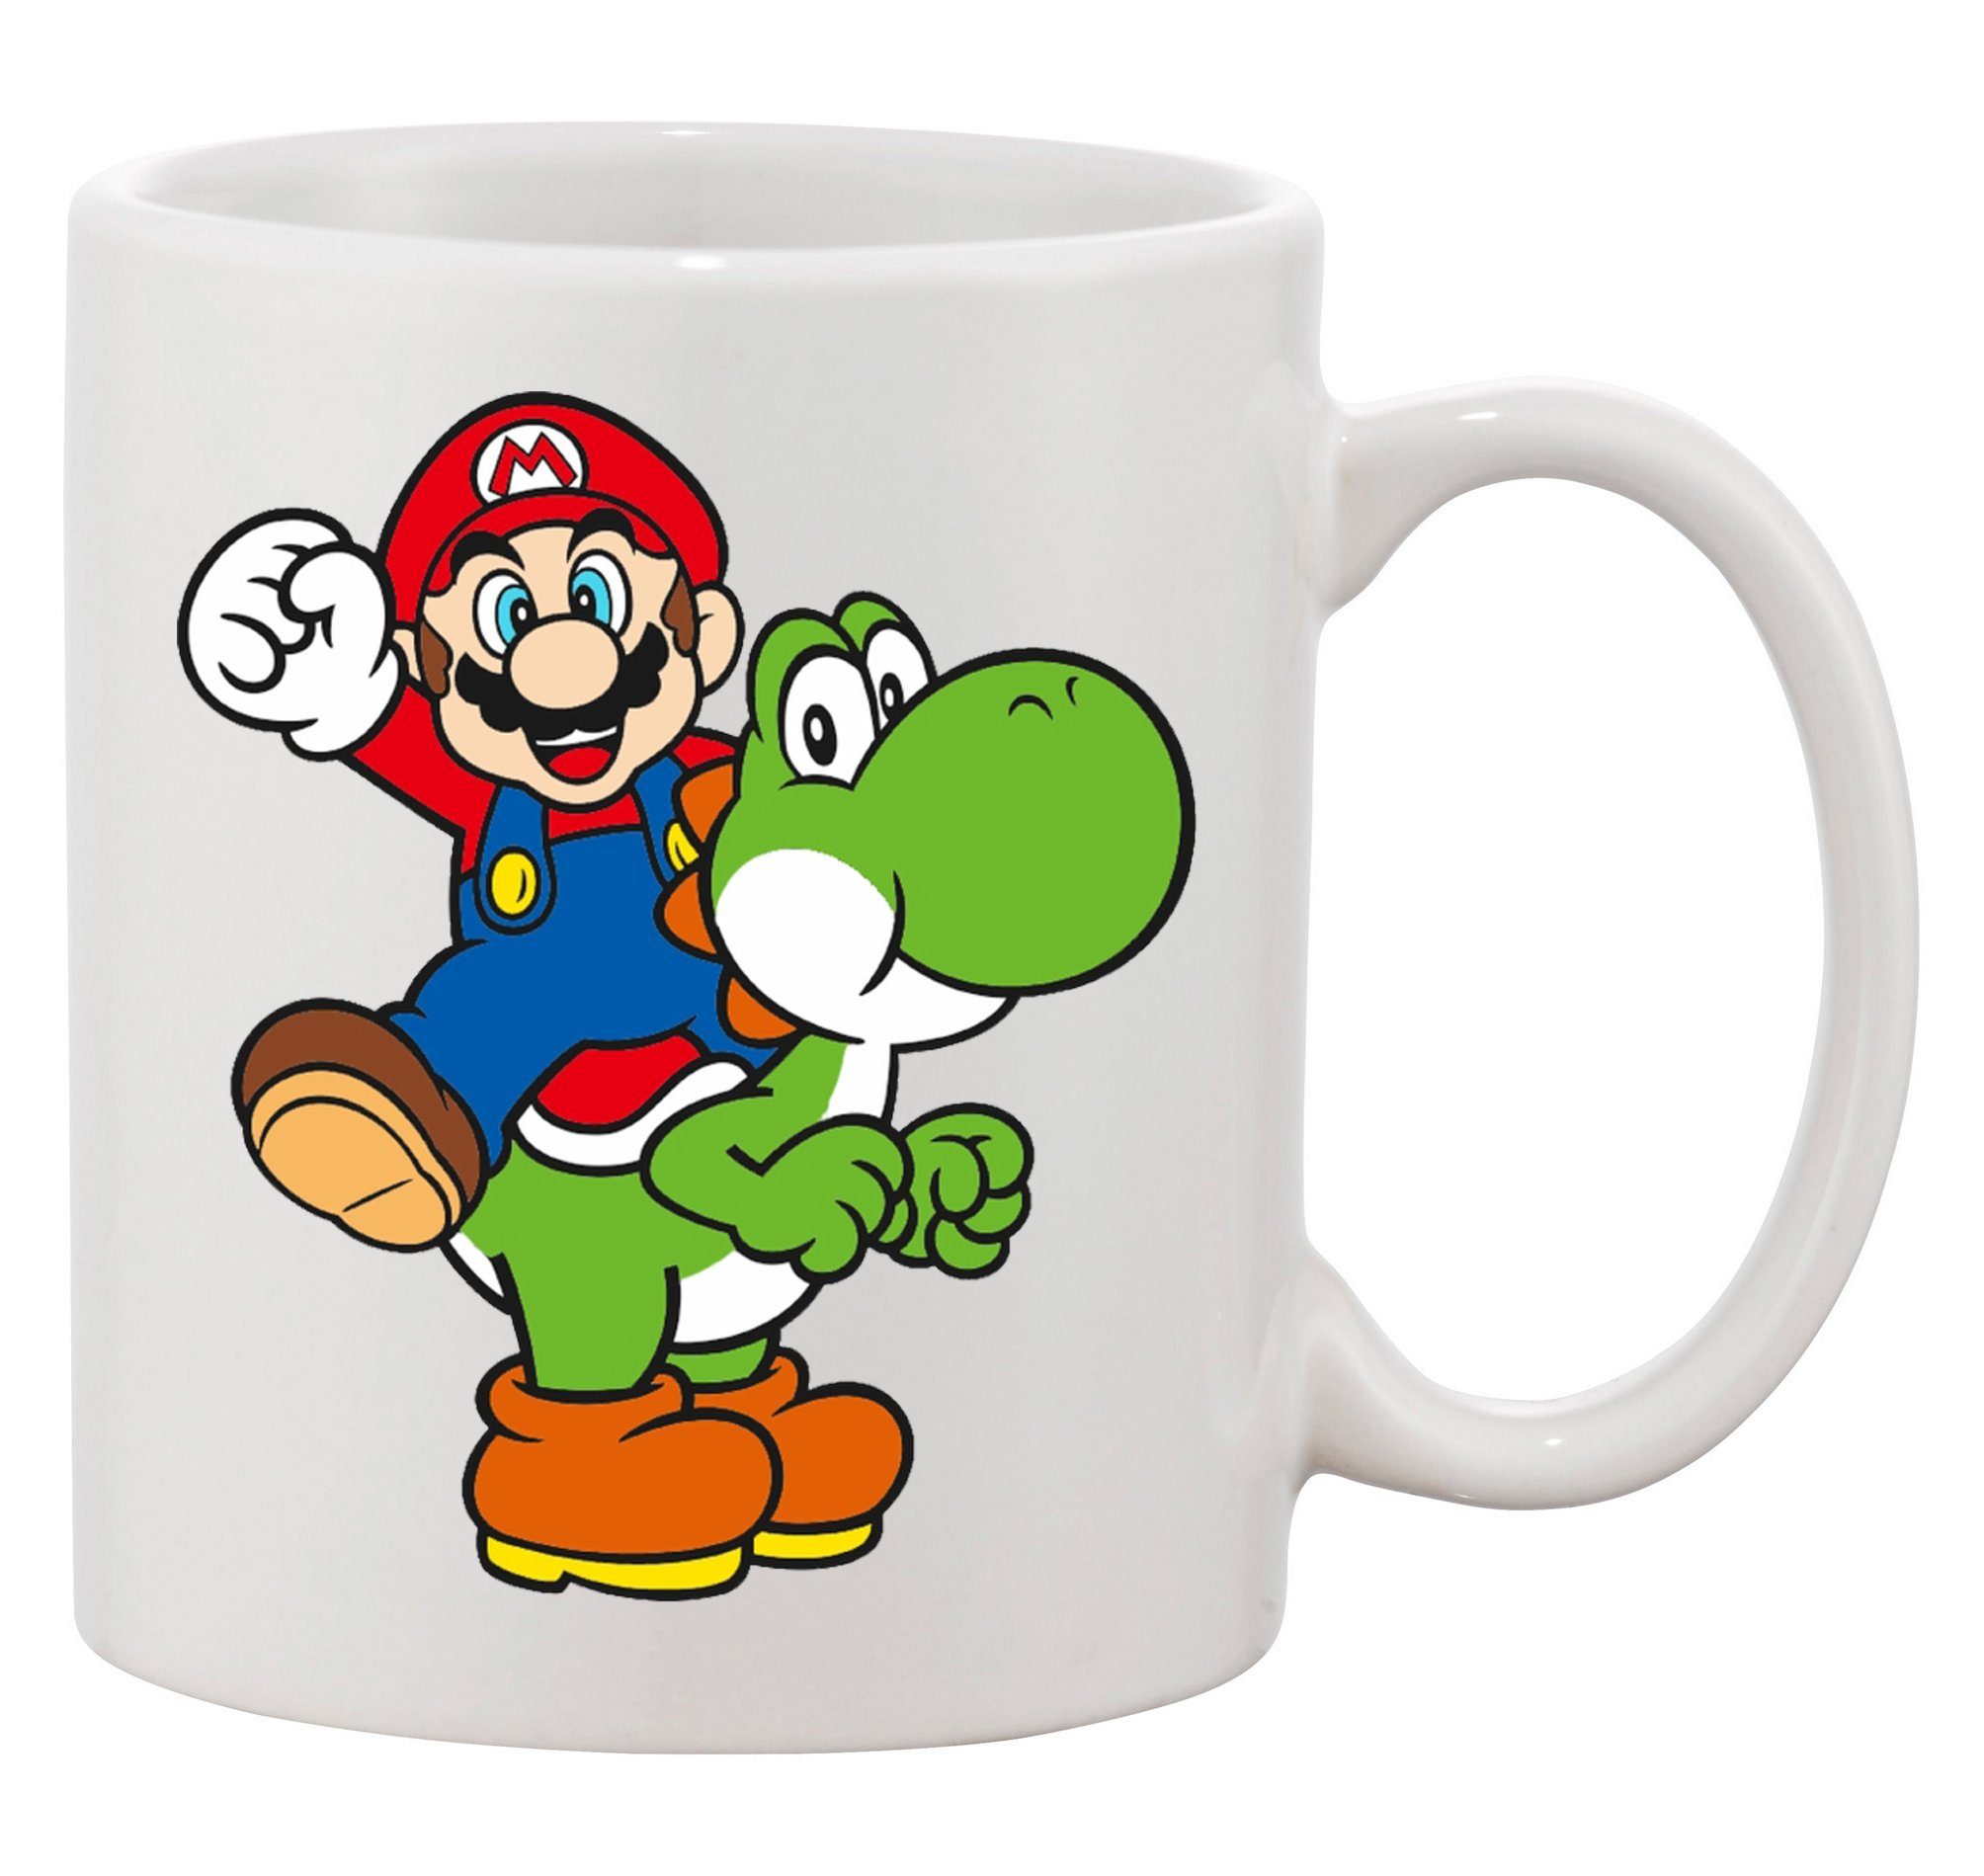 & Nintendo Konsole Spiele Keramik Nerd Mario & Blondie Weiss Super Brownie Luigi, Yoshi Tasse